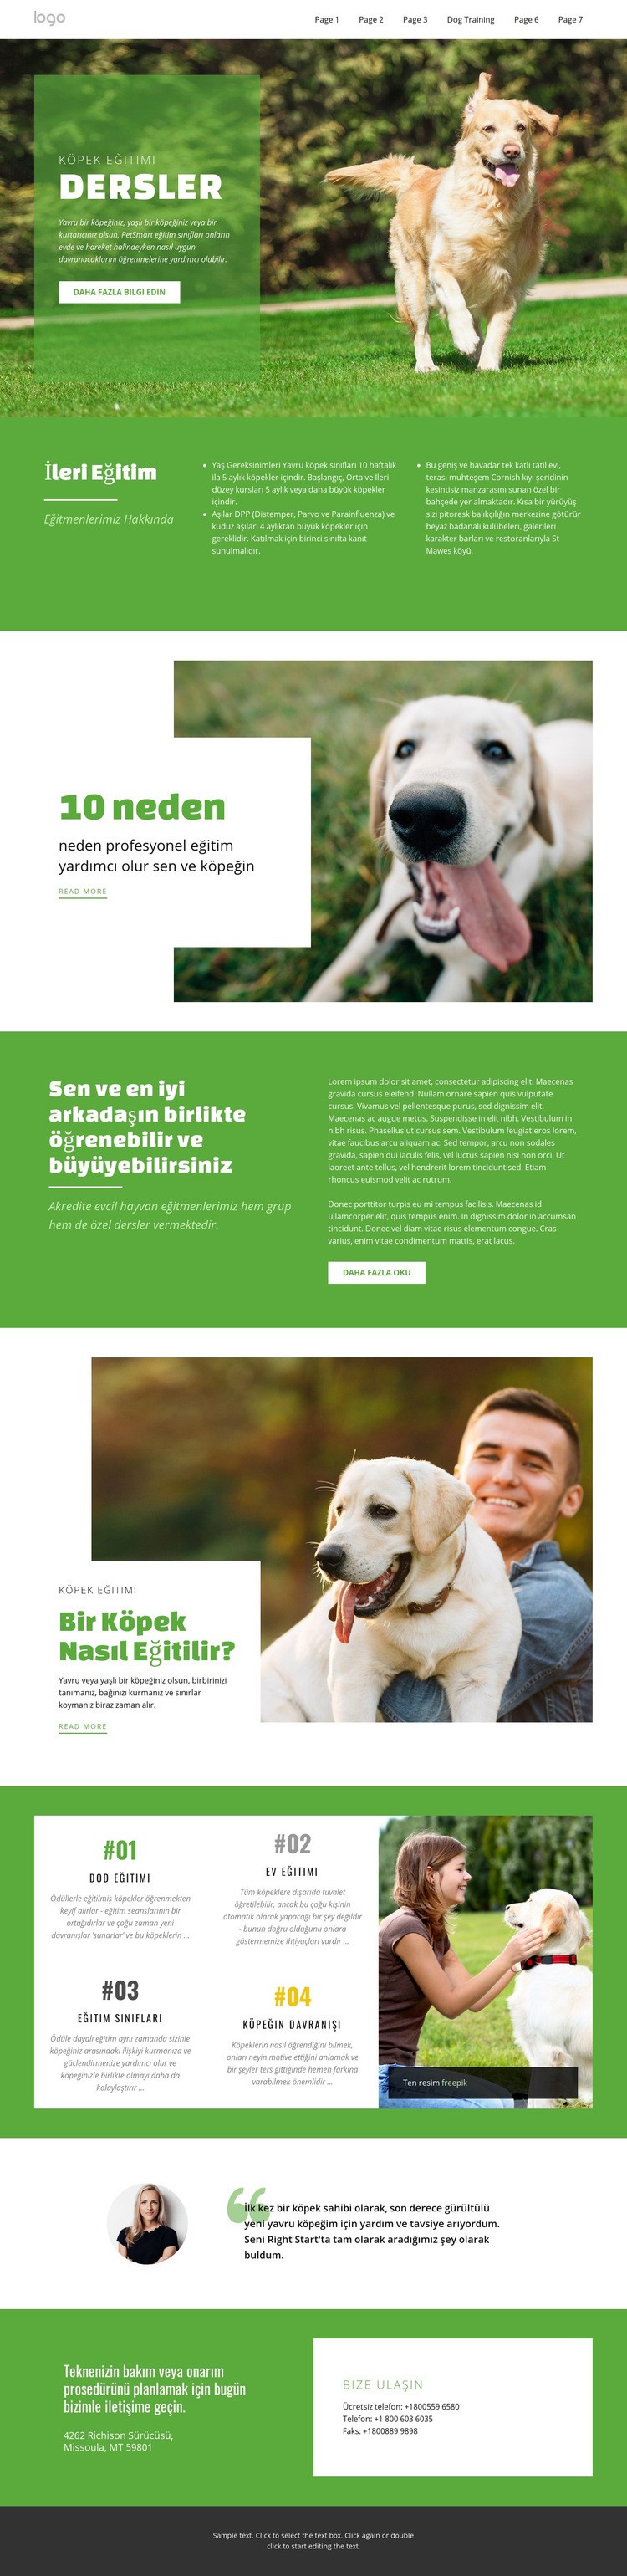 Evcil hayvanlar için eğitim kursları Web sitesi tasarımı